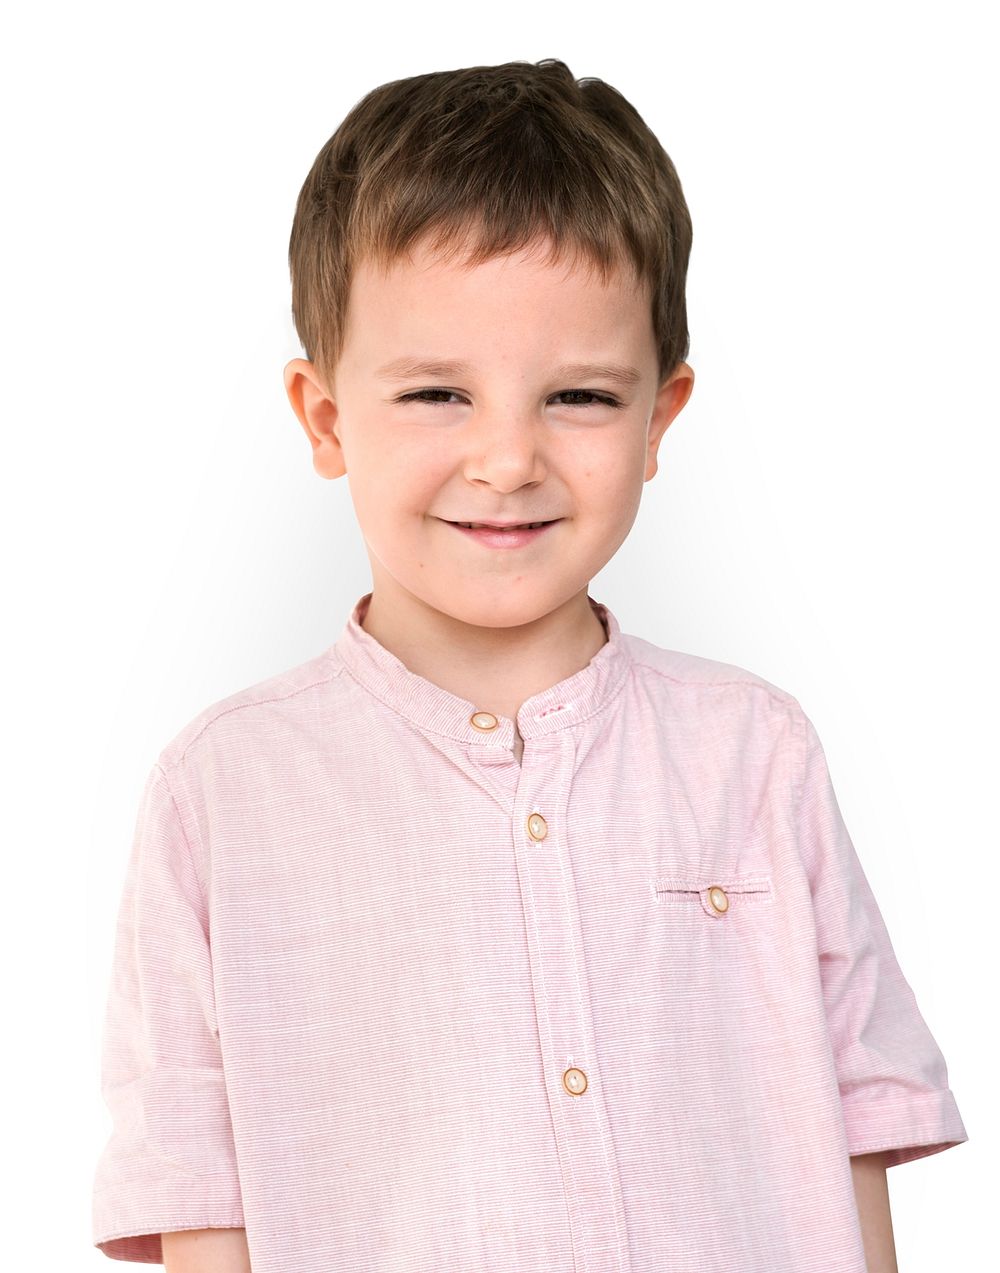 Little Young Boy Smile Portrait